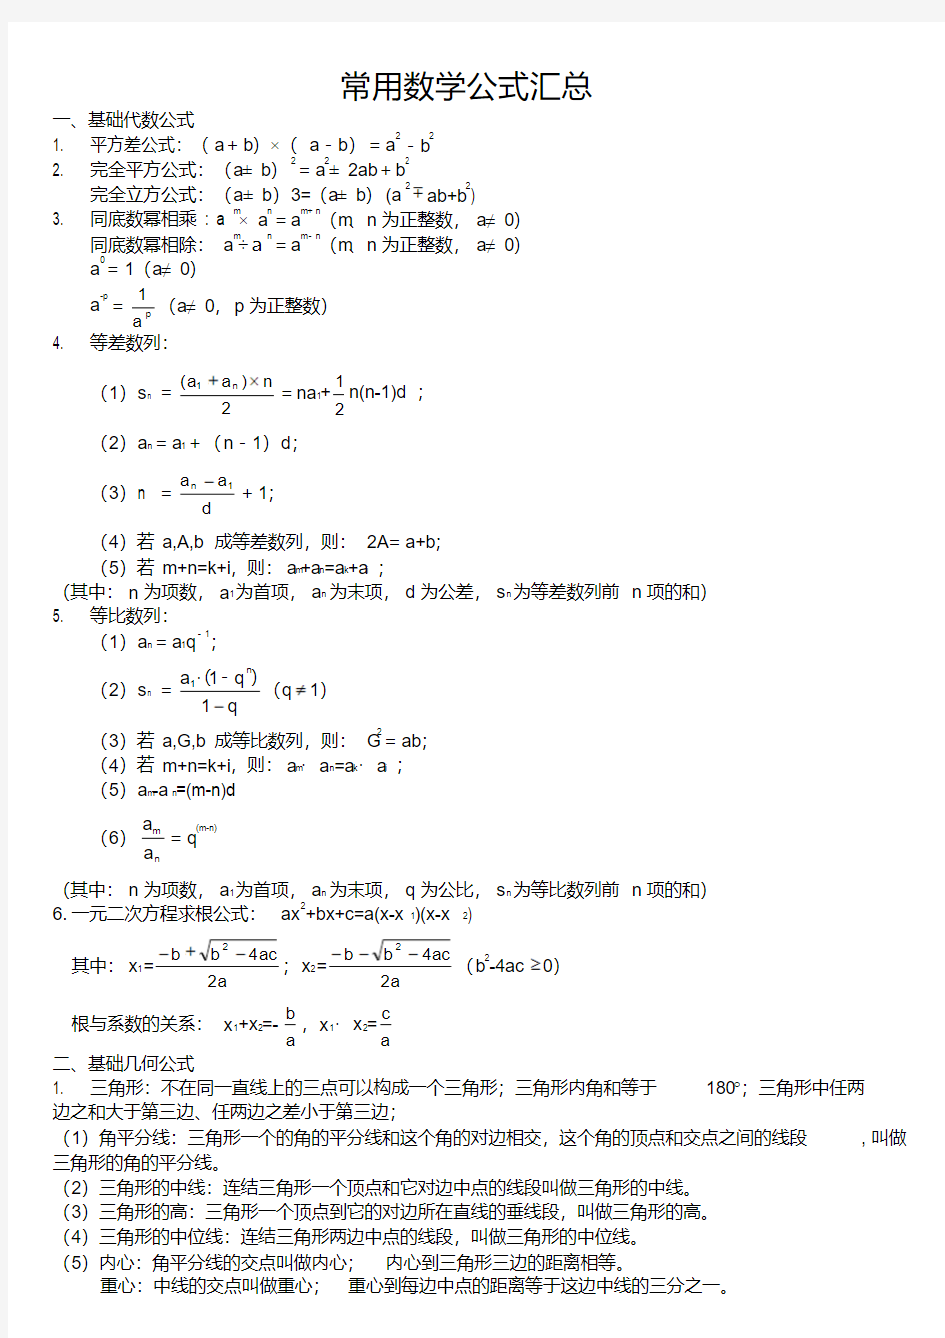 公务员考试行测常用数学公式汇总.pdf